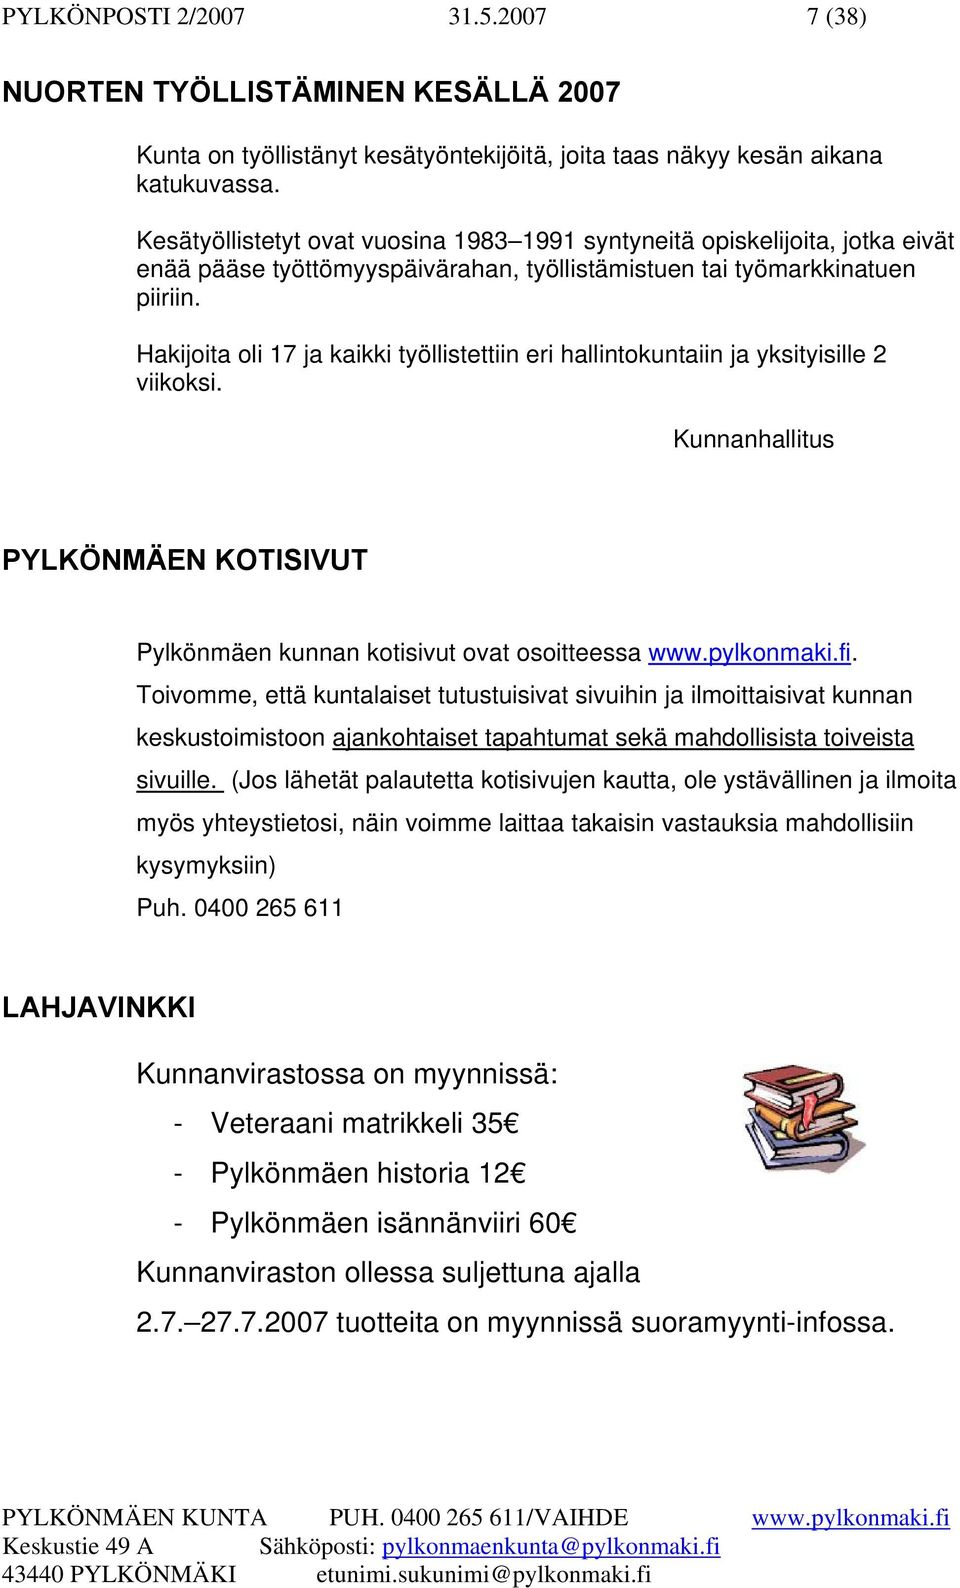 Hakijoita oli 17 ja kaikki työllistettiin eri hallintokuntaiin ja yksityisille 2 viikoksi. Kunnanhallitus PYLKÖNMÄEN KOTISIVUT Pylkönmäen kunnan kotisivut ovat osoitteessa www.pylkonmaki.fi.